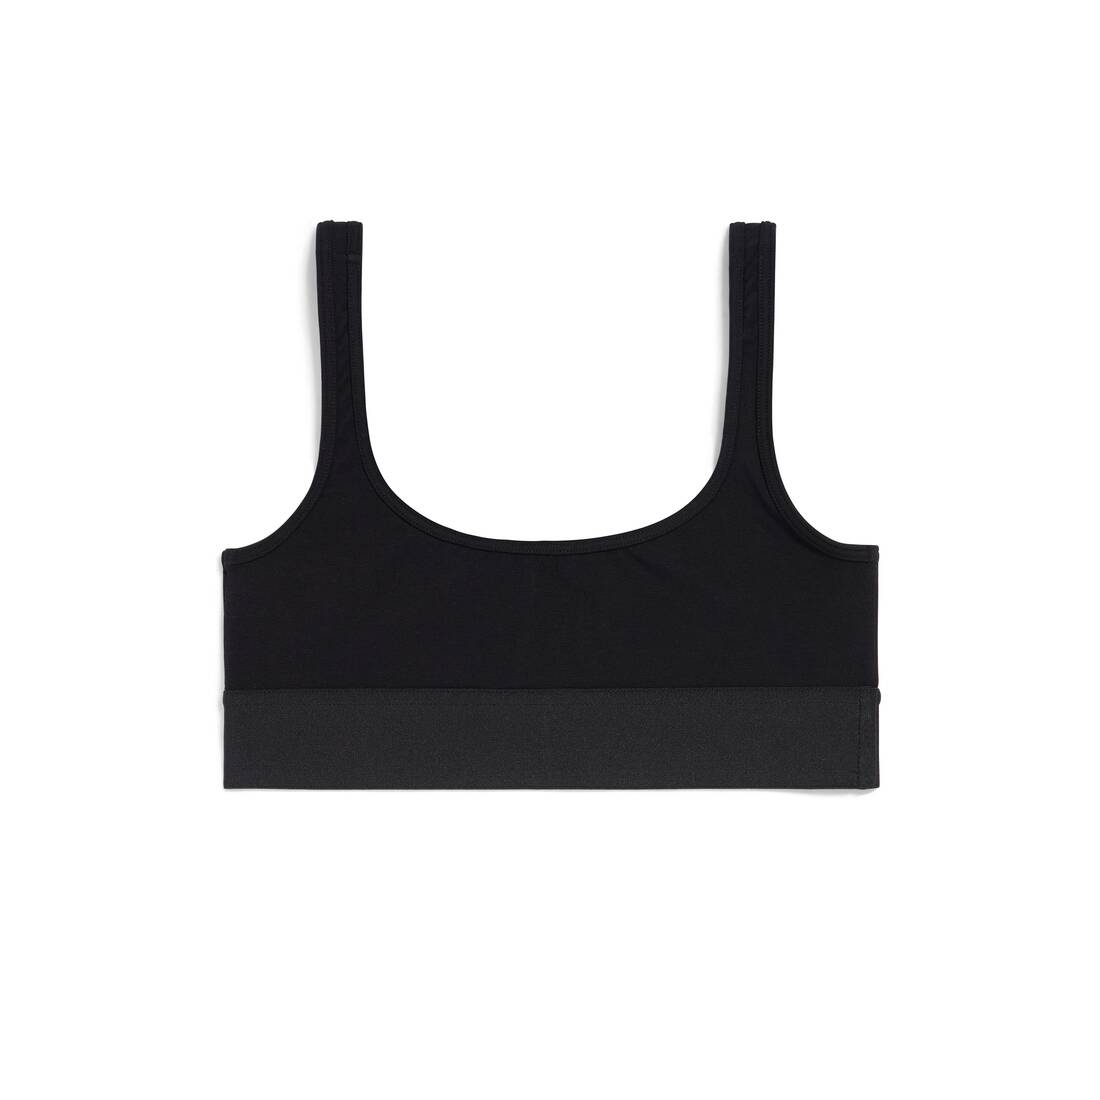 vbnergoie Women's Low Back Bra Lace Glossy U Shape Backless Bra 38B Black  Sports Bra with Clasp Bras to Wear with A Backless Dress